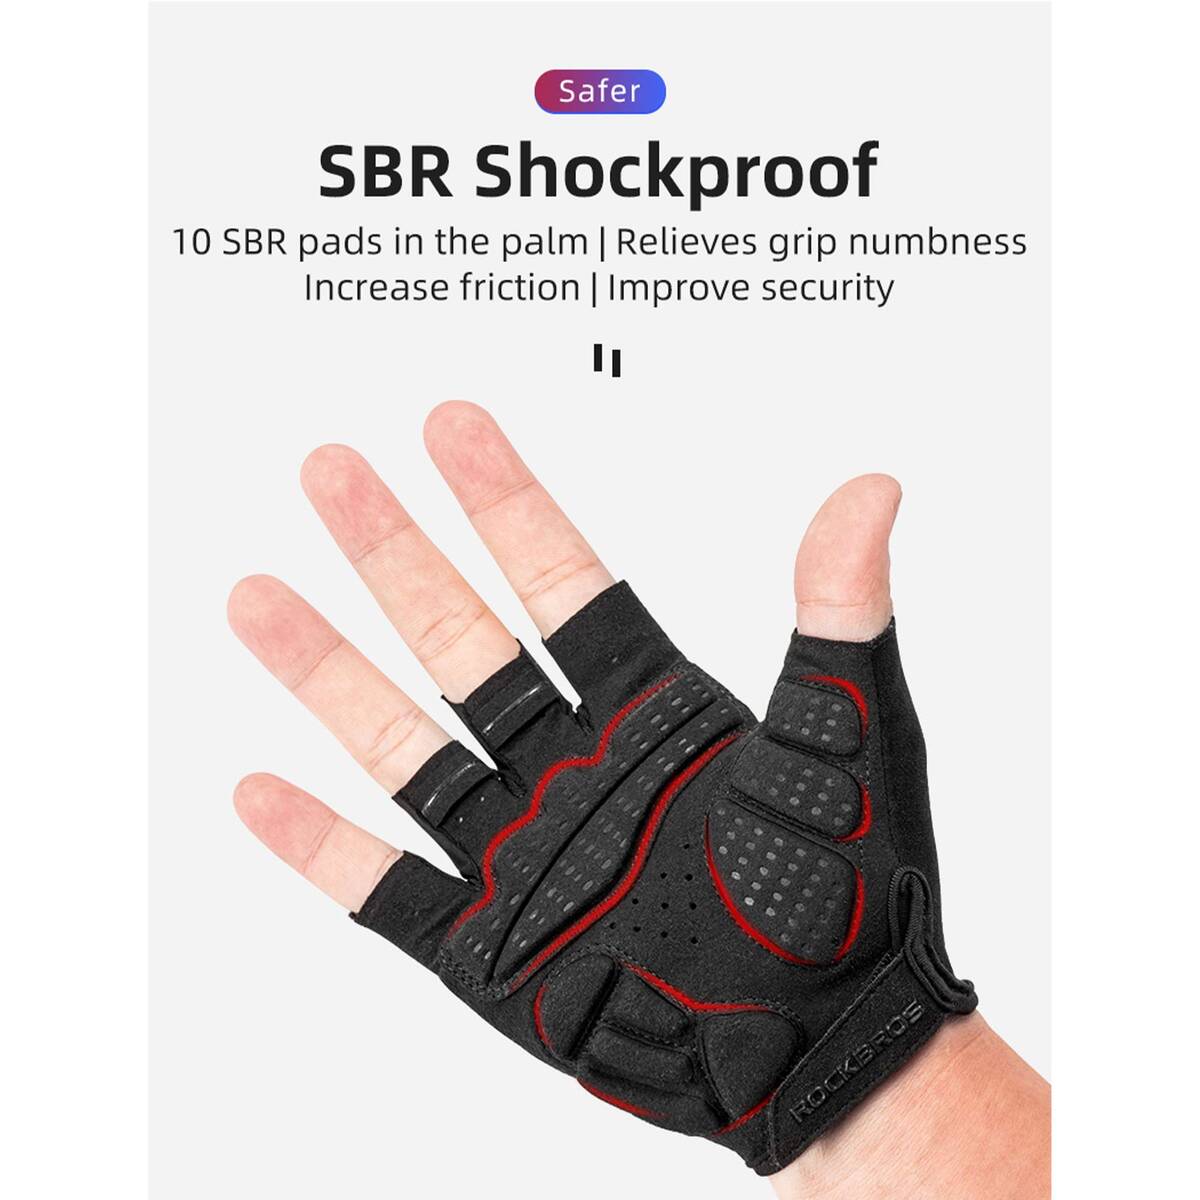 ROCKBROS Half Finger Cycling Gloves S220 Medium